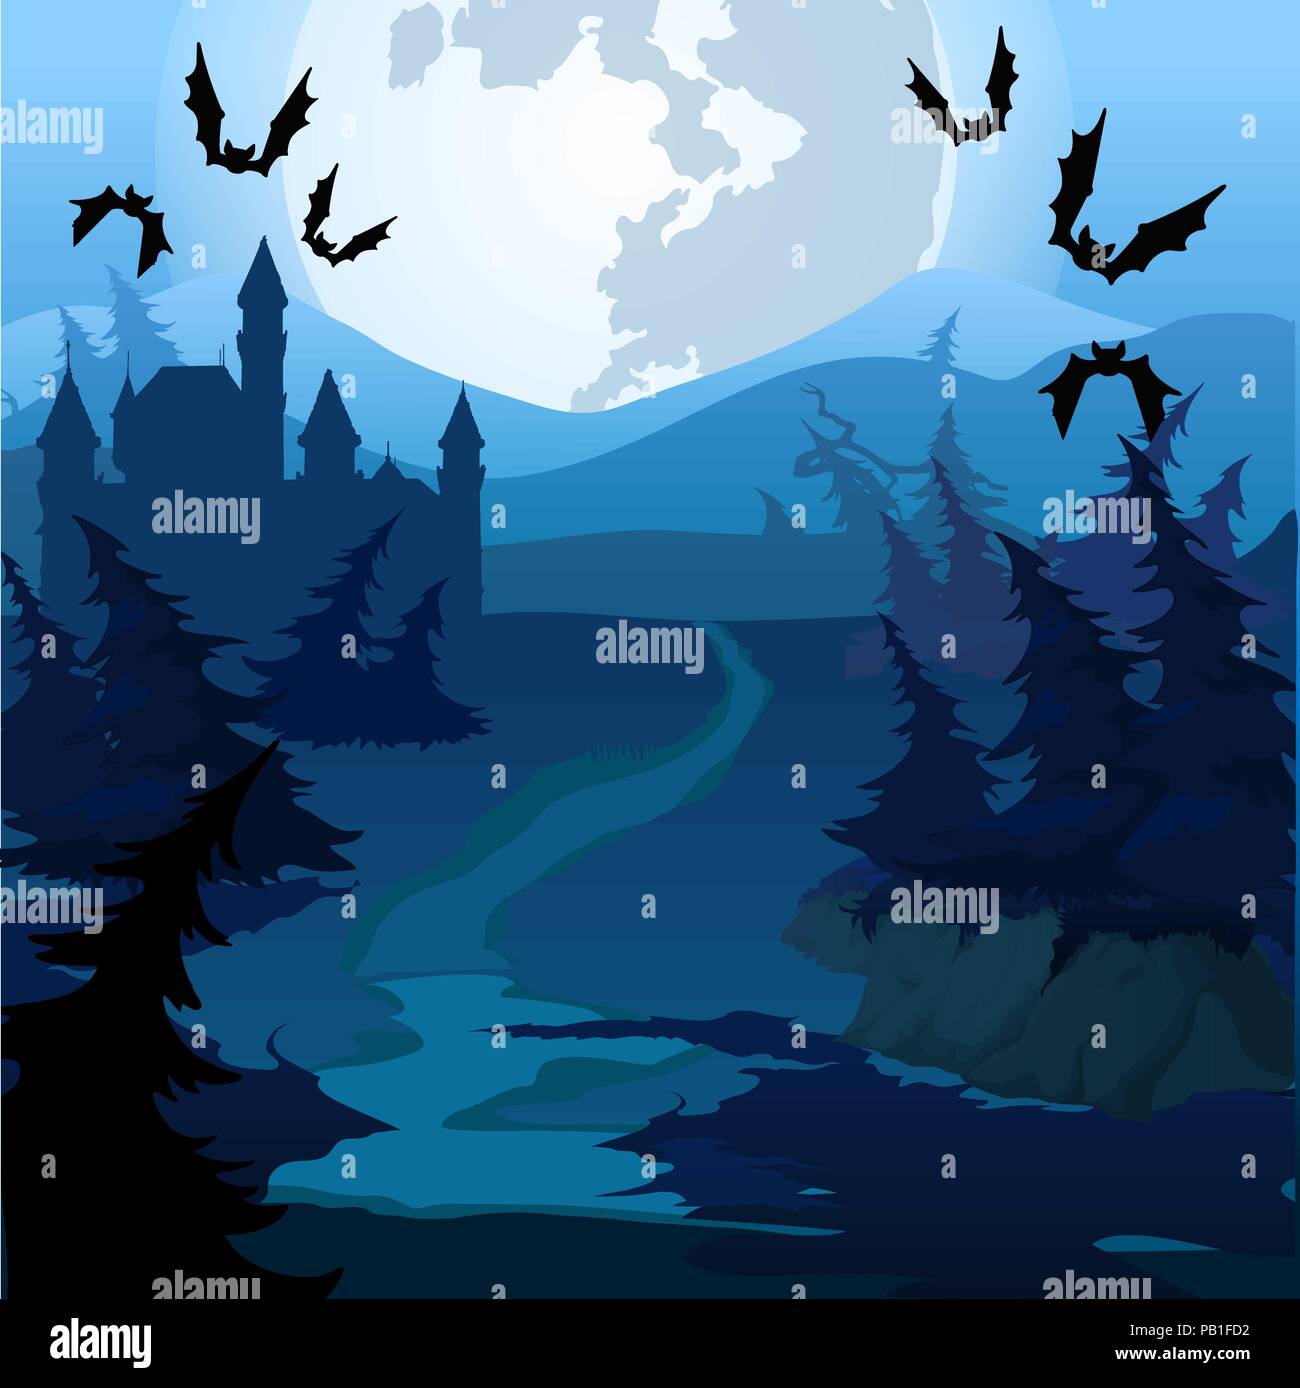 Il percorso attraverso il bosco incantato di notte. Vector cartoon close-up  illustrazione Immagine e Vettoriale - Alamy